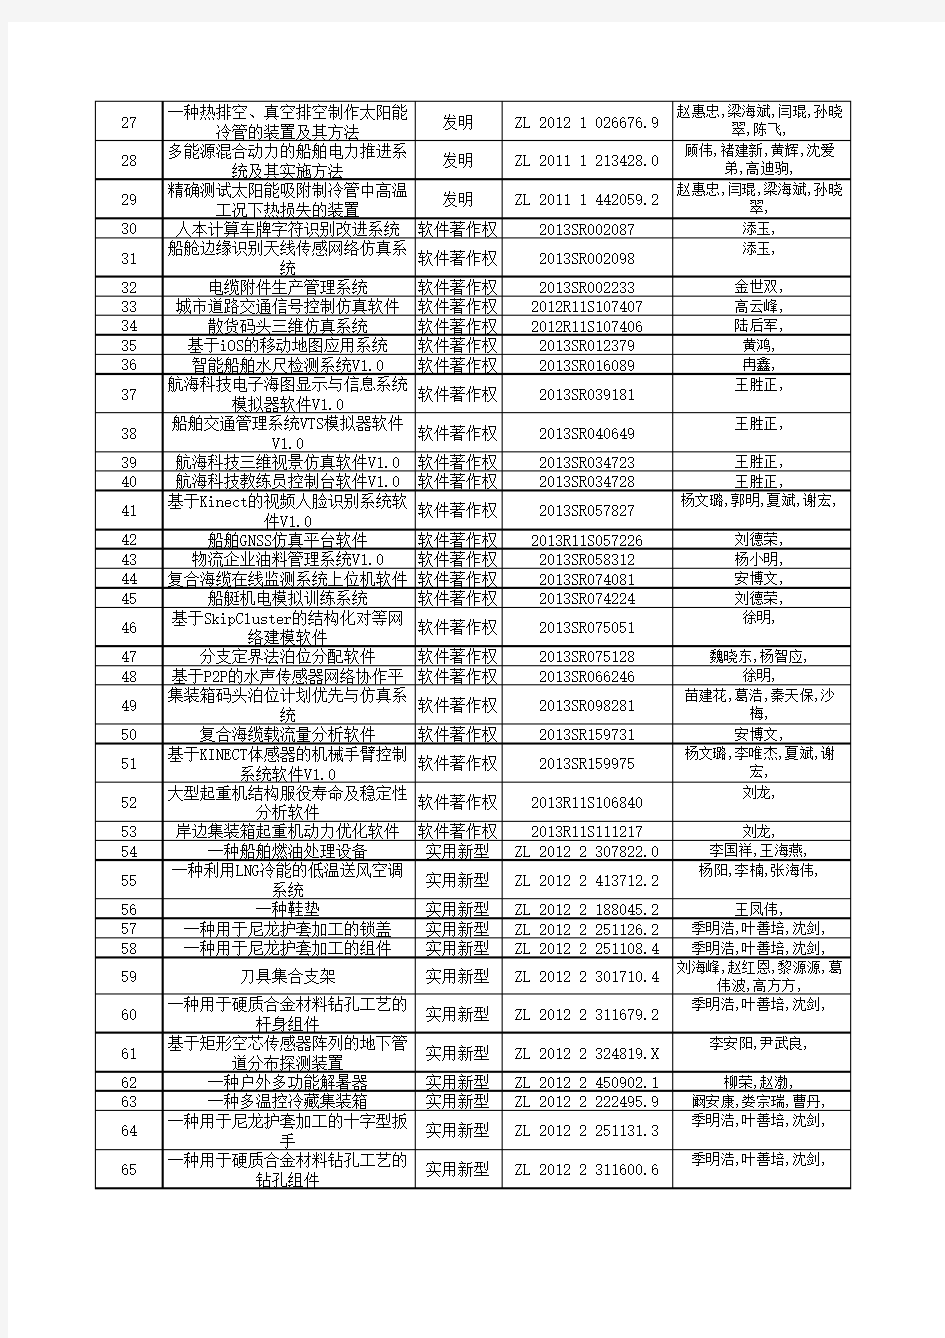 2013年度上海海事大学授权专利一览表